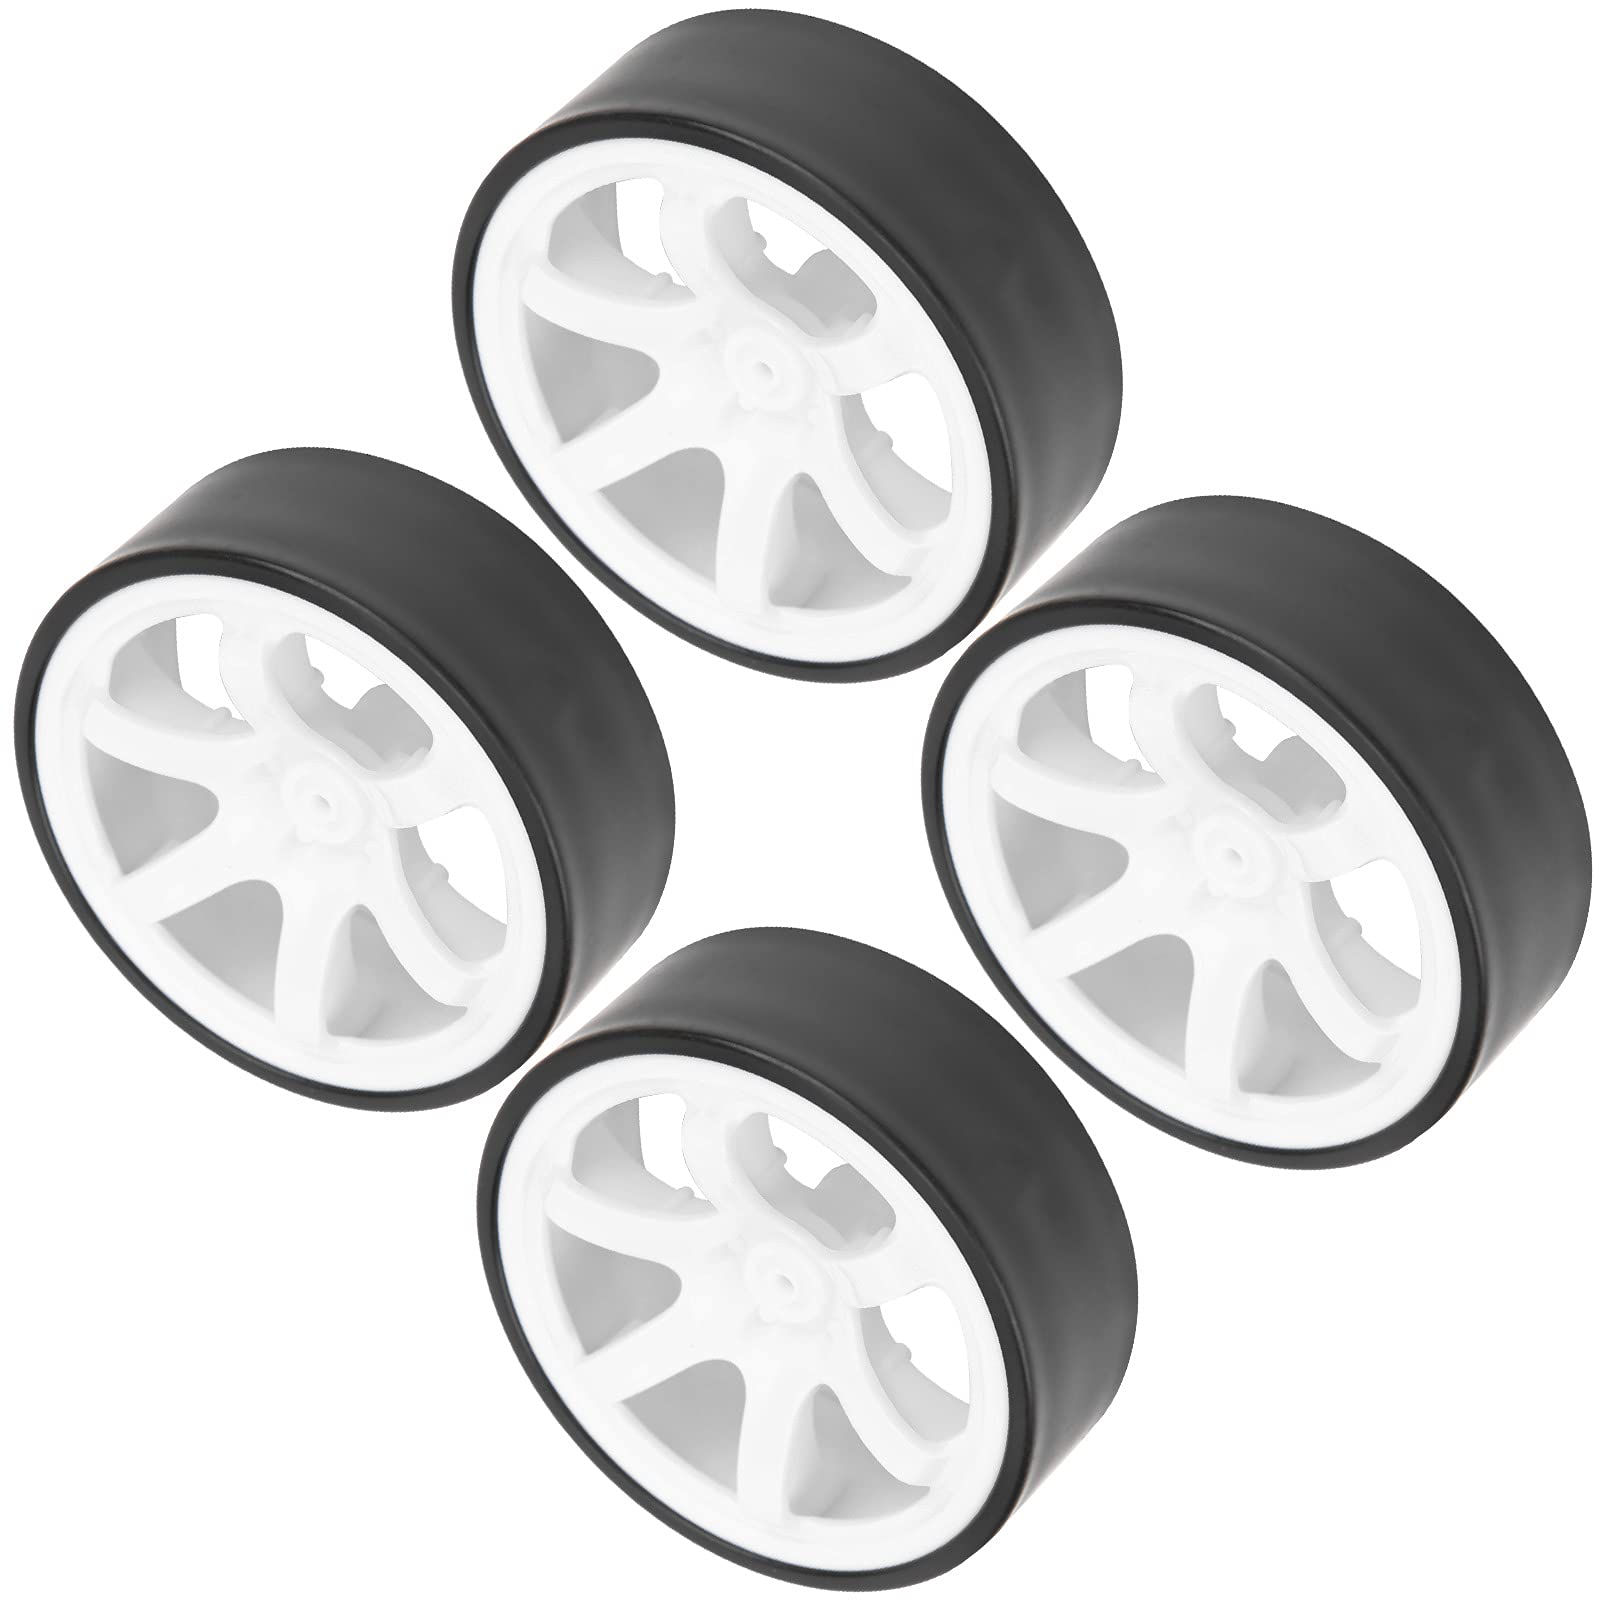 RC-Auto-Drift-Reifen, stabilere RC-Antriebsnabe für RC-Auto-Upgrade-Teil für 1/10 RC-Fernbedienungs-Hochgeschwindigkeitsauto(Weiß) von Jopwkuin